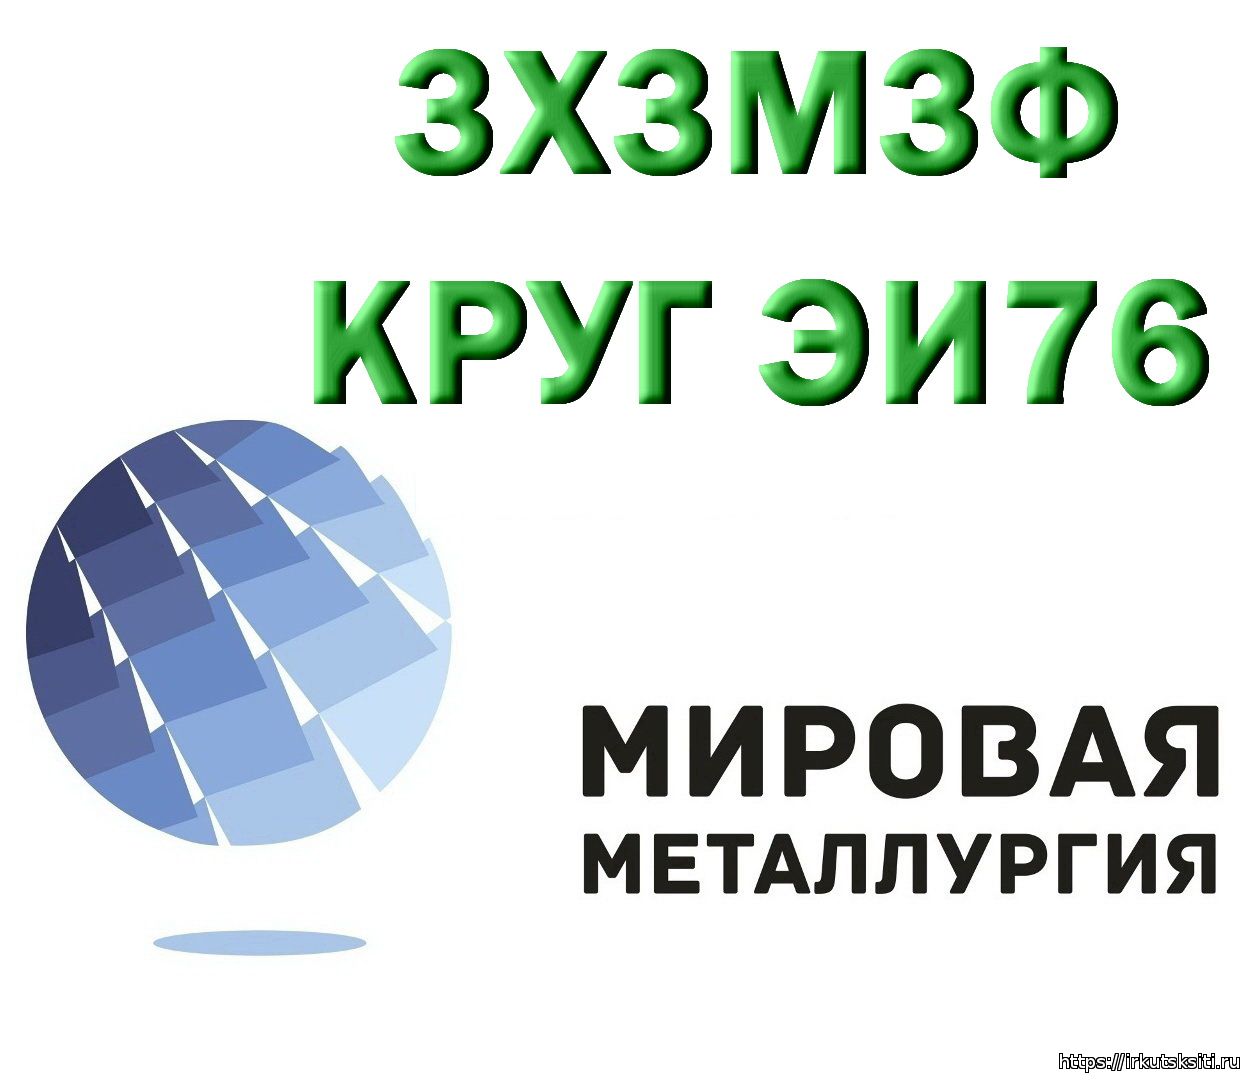 Компания ООО «Мировая Металлургия» предлагает вам купить сталь 3Х3М3Ф на выгодных условиях